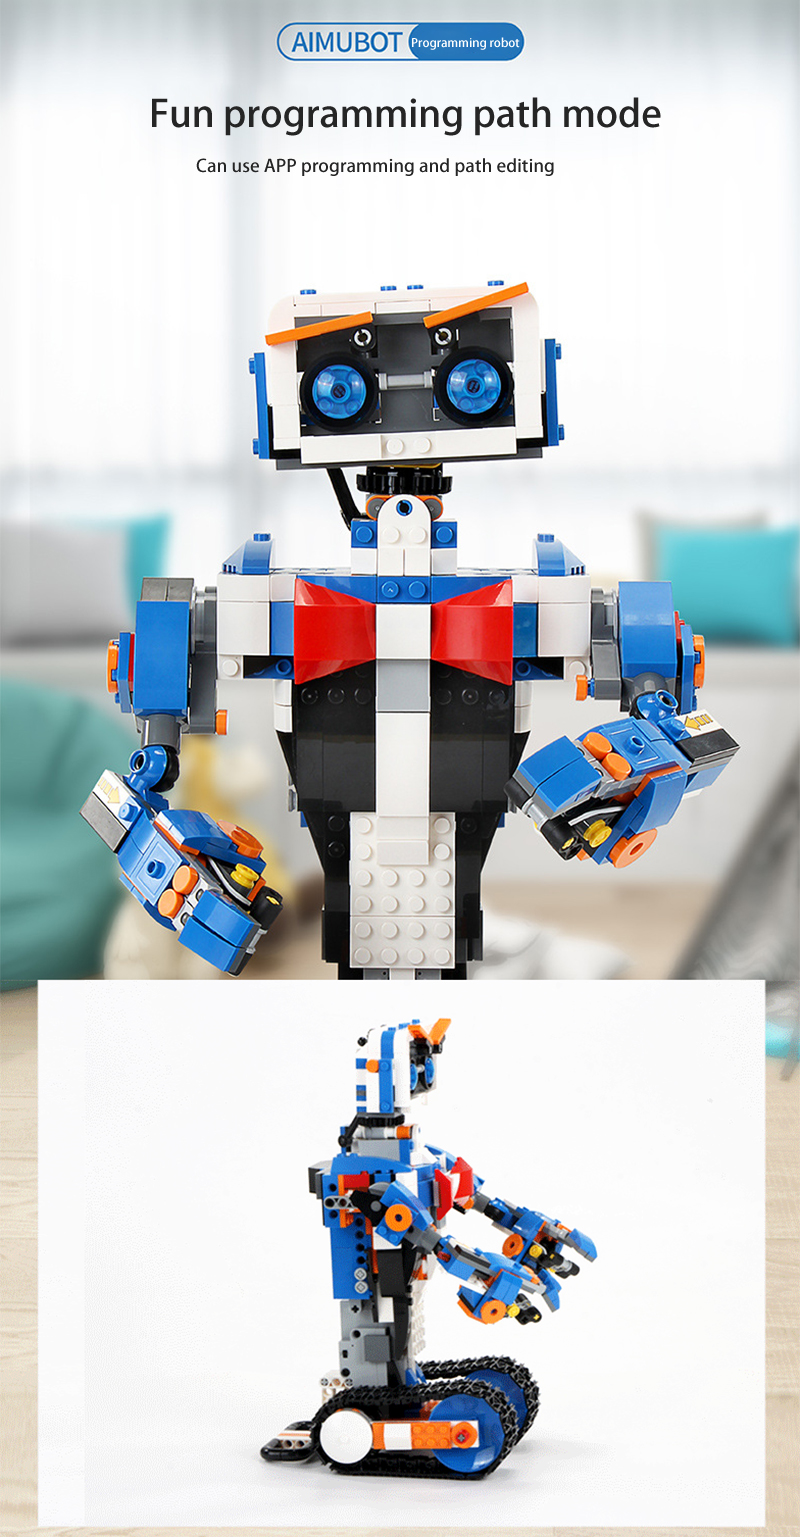 FORMEN KÖNIG 13063 Aimubot Intelligent RC DIY Roboter Bausteine Spielzeug Set